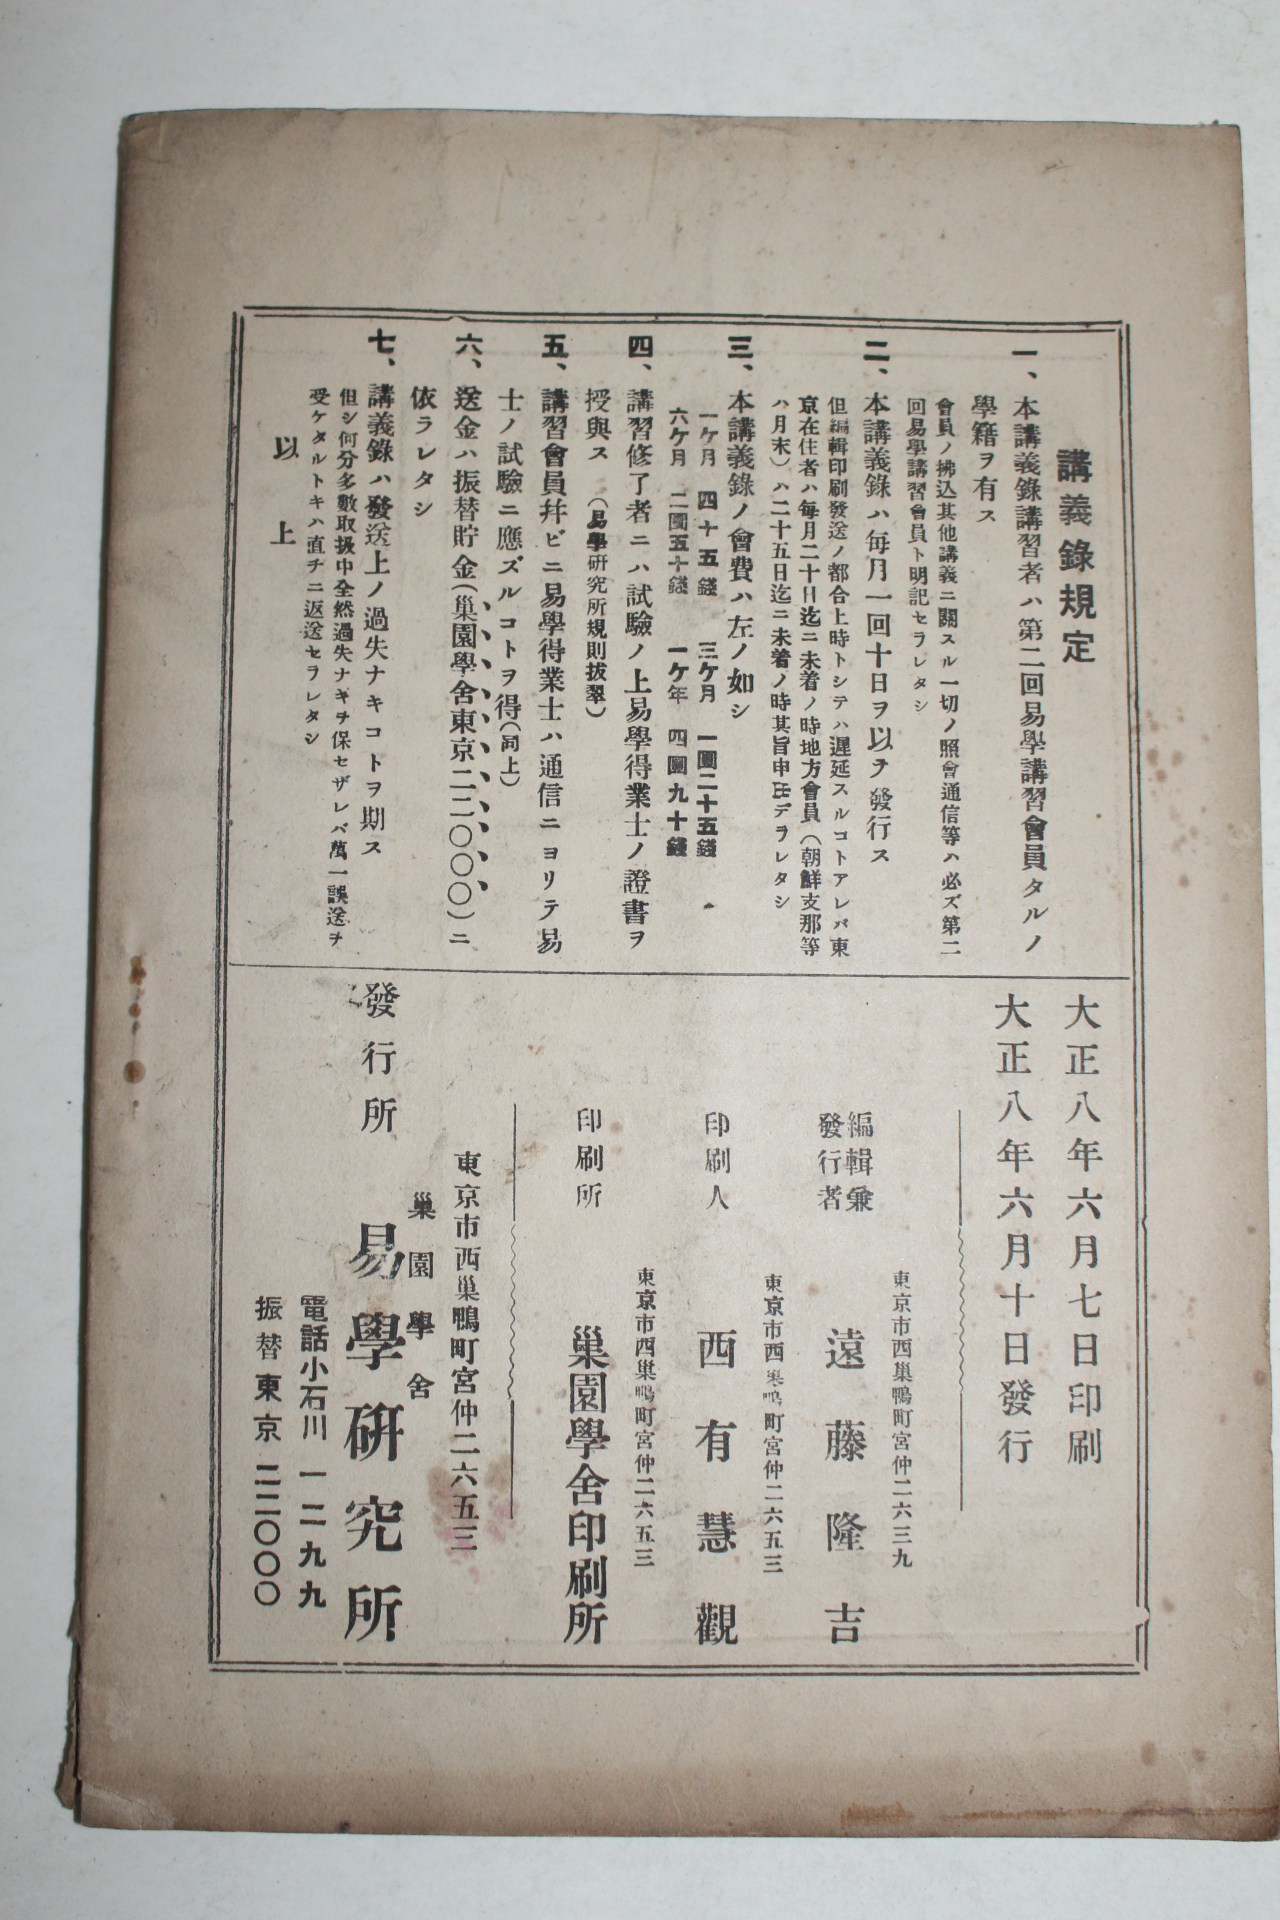 1921년(대정8년) 역학강의록(易學講義錄)